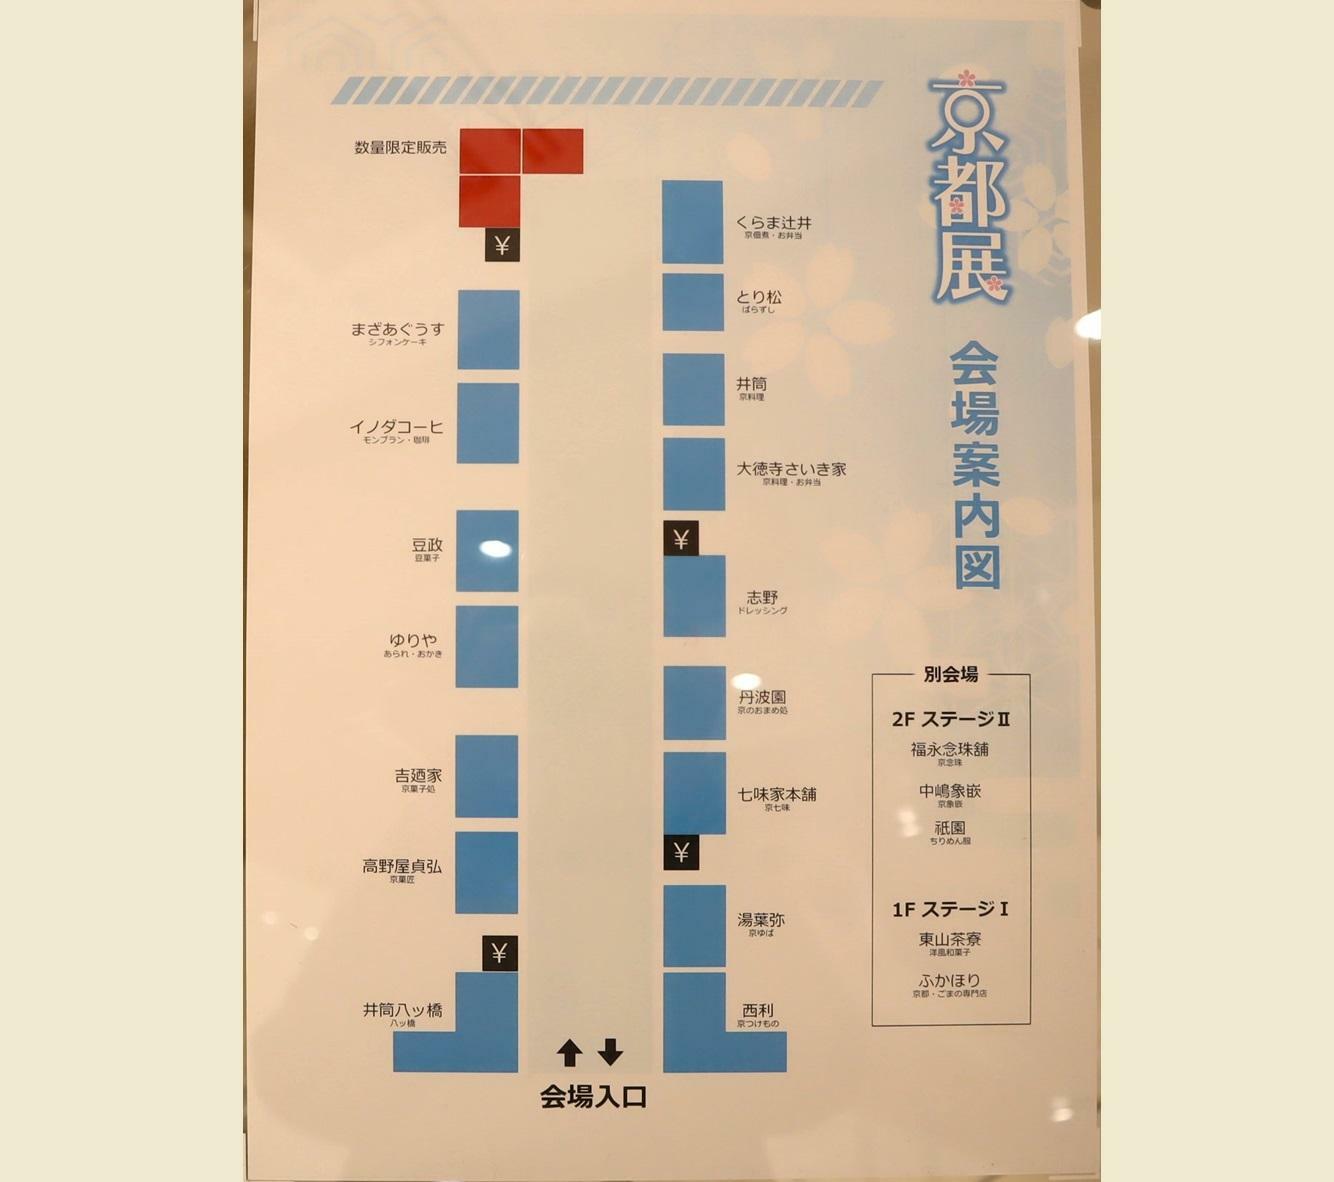 イベントスペース「京都展 会場案内図」